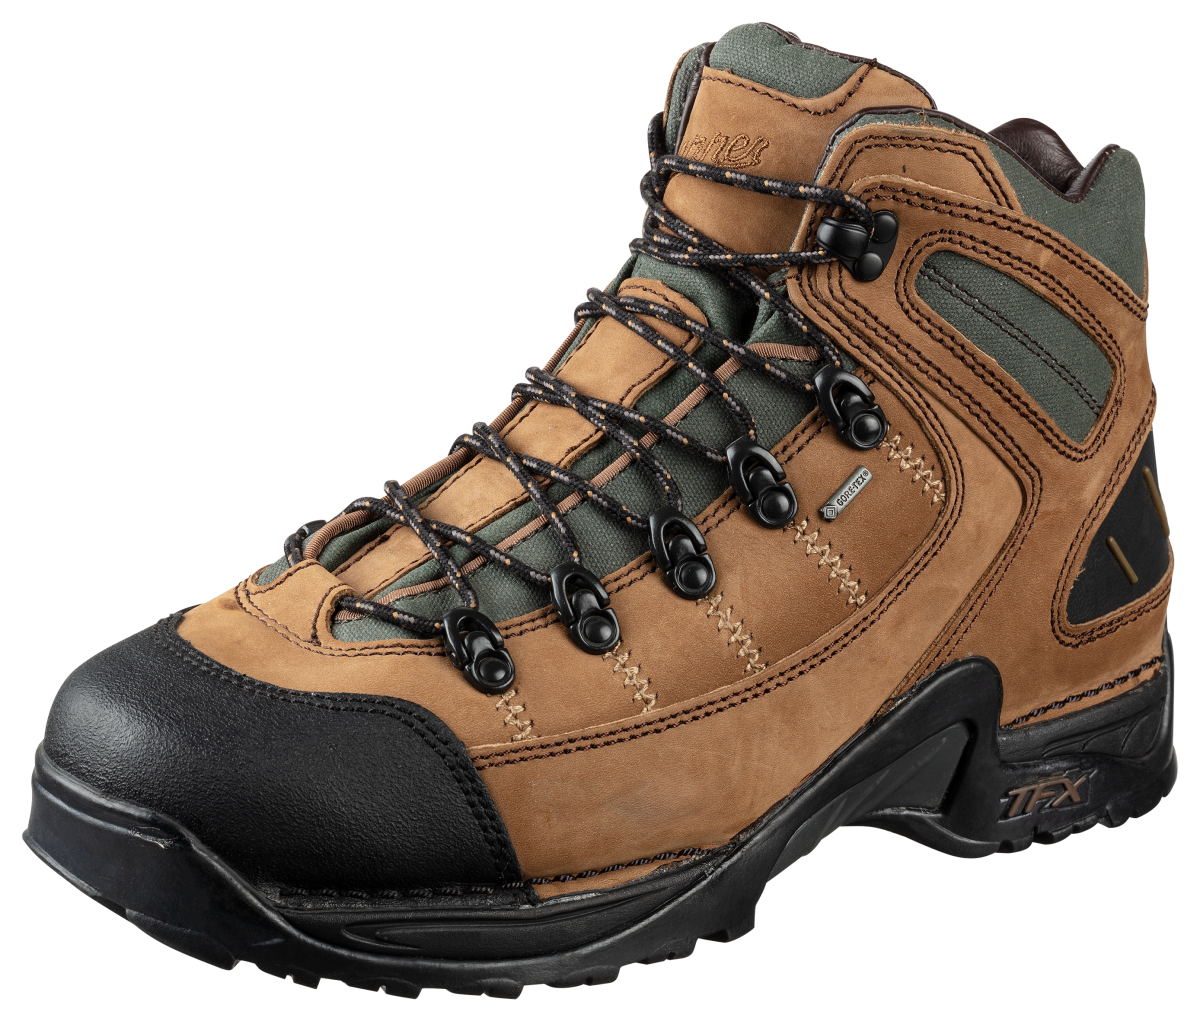 Danner 453 GORE-TEX Waterproof Hiking Boots for Men - Dark Tan - 11W ...